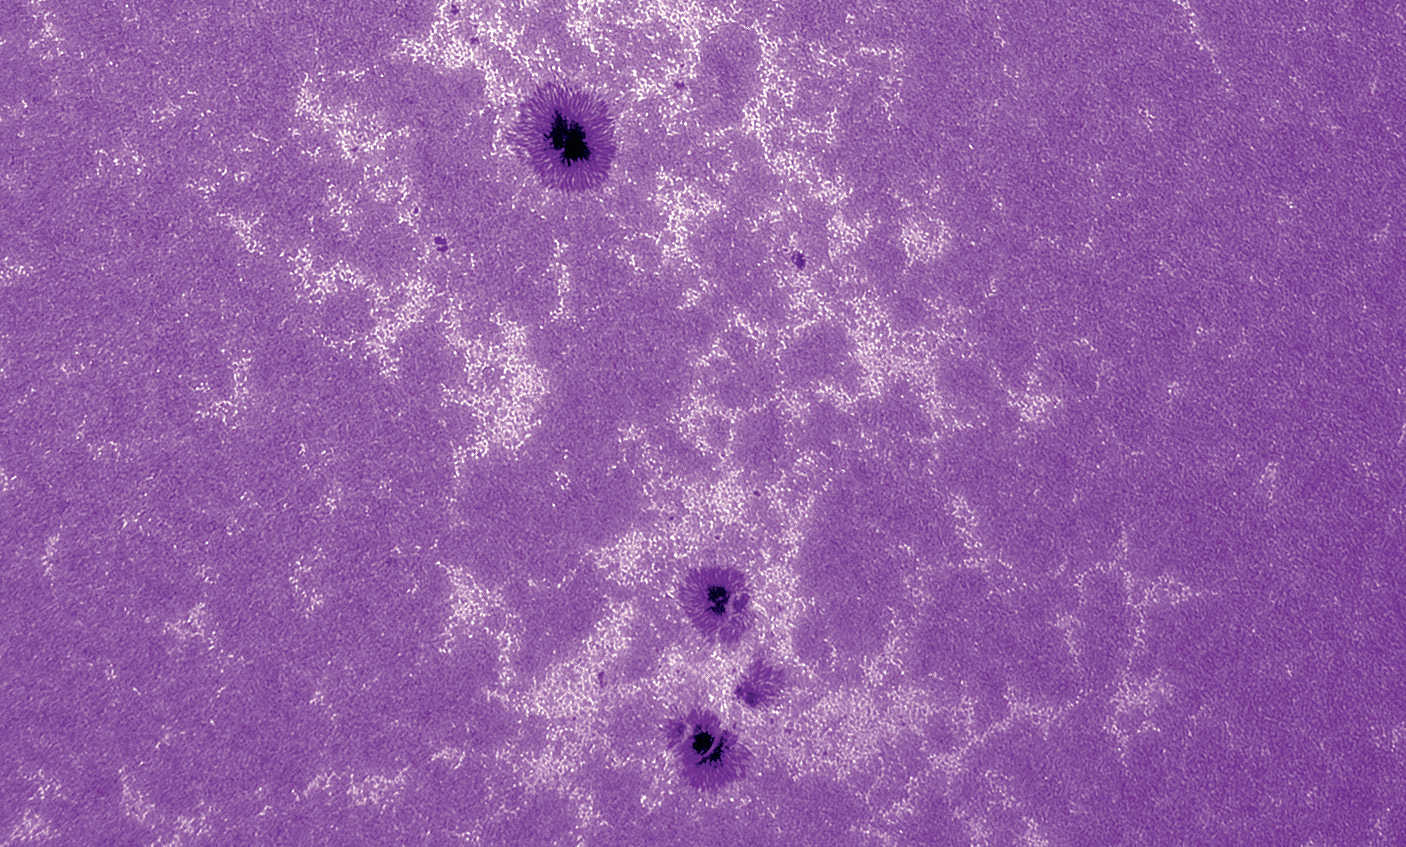 Immagine del Sole in luce CaK. Modulo CaK di Lunt (b600) su un rifrattore con lunghezza focale 2250 mm, apertura 130 mm, camera CCD non raffreddata; 500 immagini estratte da una sequenza di 2500 elaborate con Avistack e Photoshop. U. Dittler